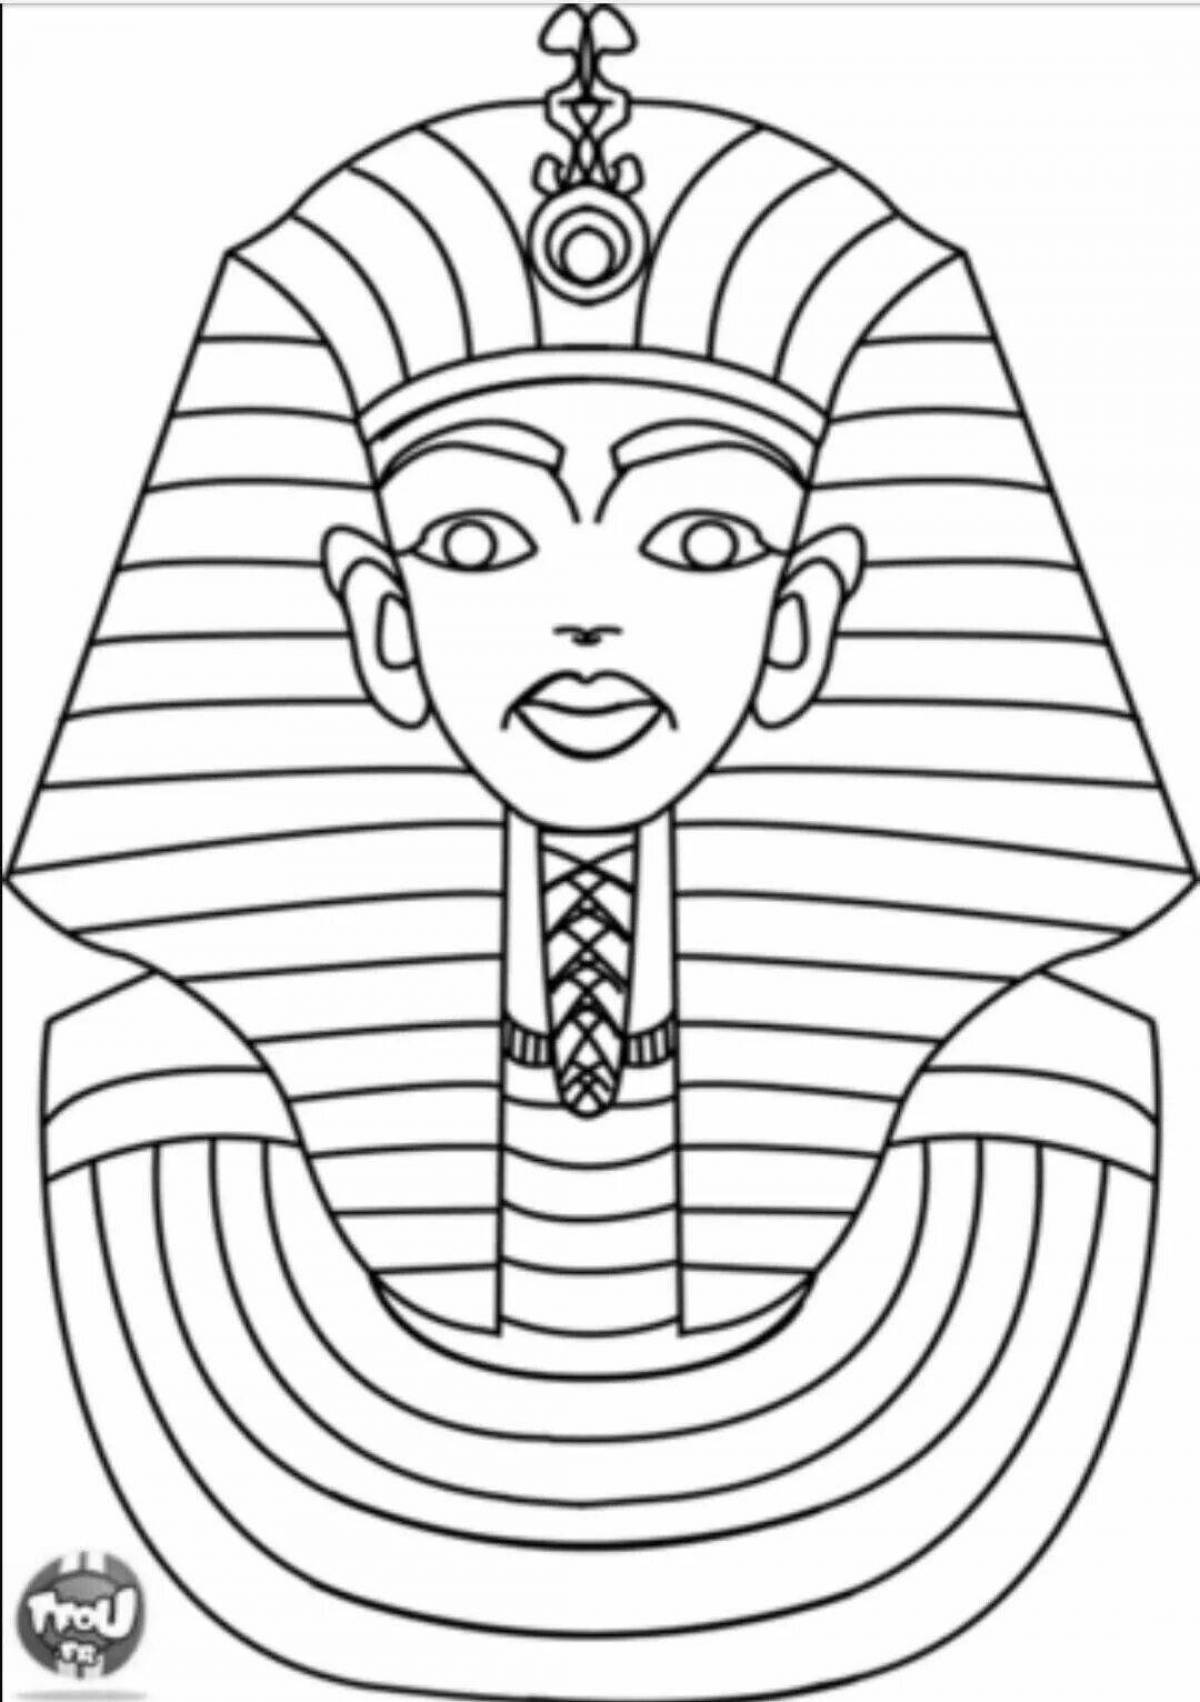 Coloring page charming pharaoh mask